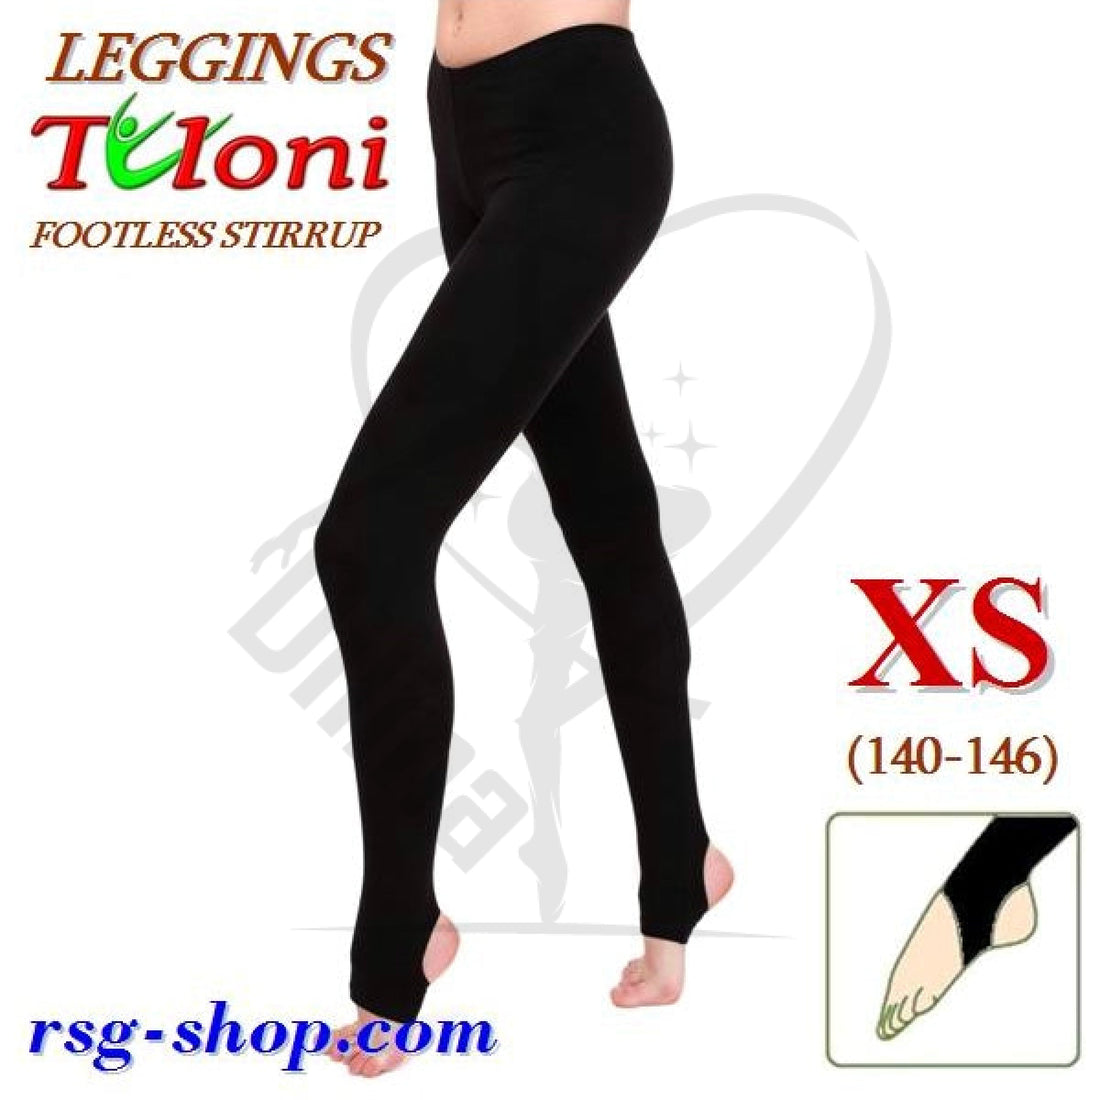 Tuloni Stirrup Leggings Xs (140-146) Tights